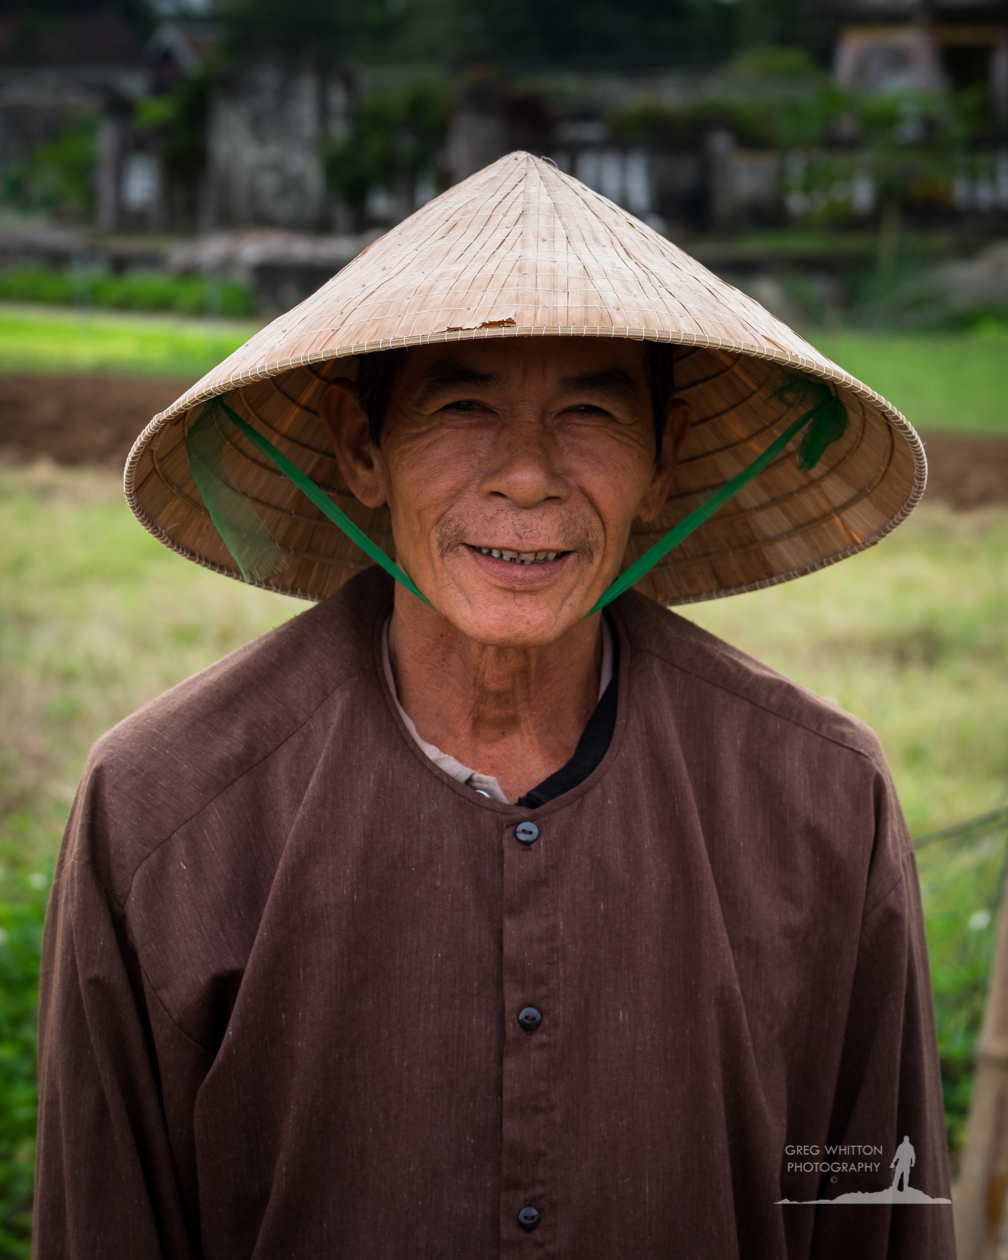 vietnam people asia Indochina portrait fuji X-T1